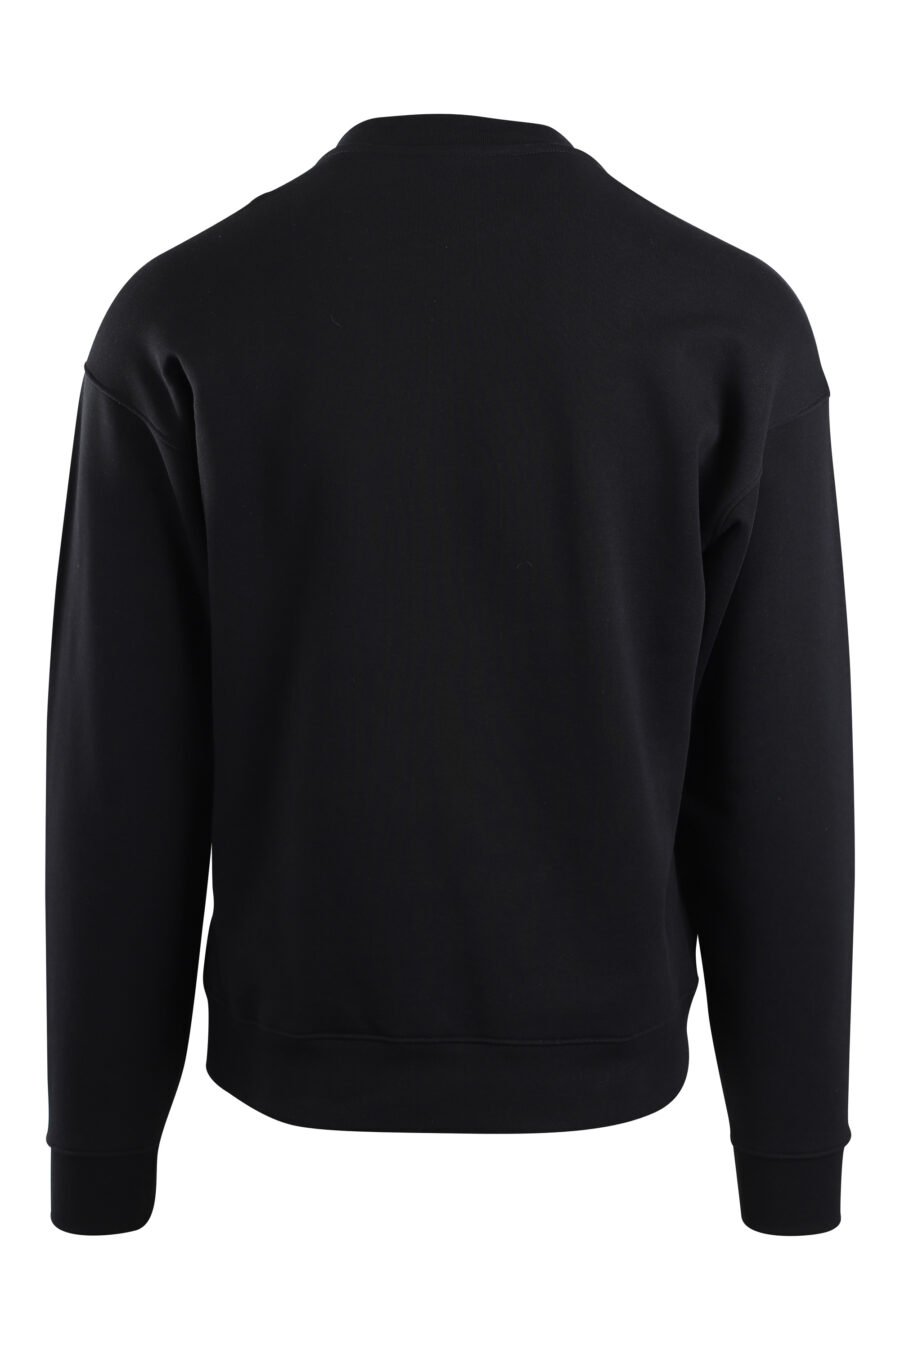 Schwarzes Sweatshirt mit Maxilogo-Bär "Dies ist kein Moschino-Spielzeug" - IMG 2141